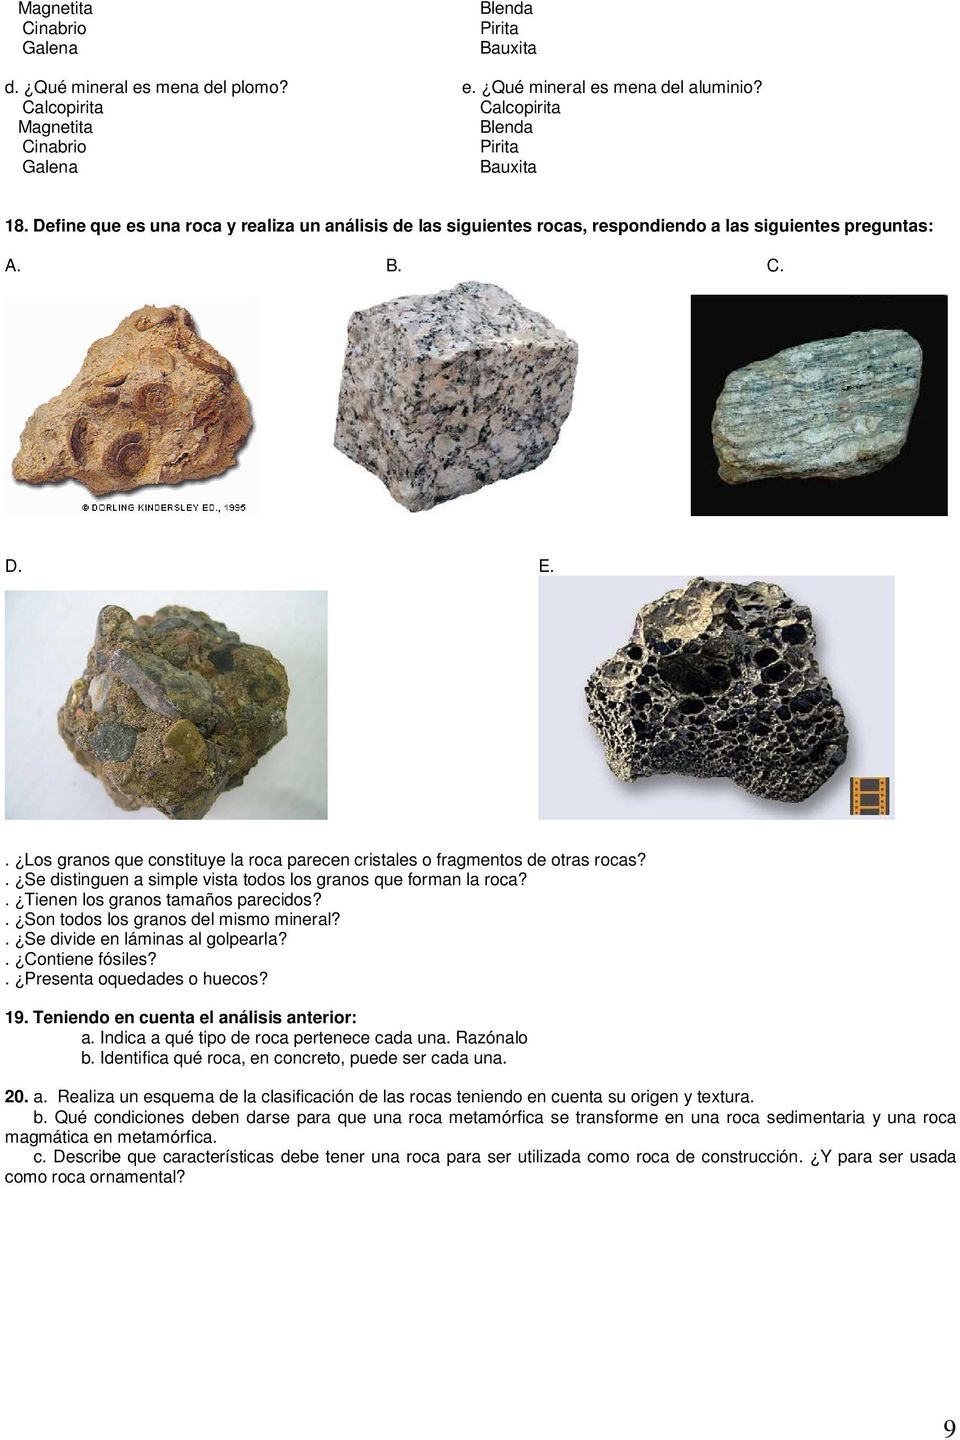 . Los granos que constituye la roca parecen cristales o fragmentos de otras rocas?. Se distinguen a simple vista todos los granos que forman la roca?. Tienen los granos tamaños parecidos?